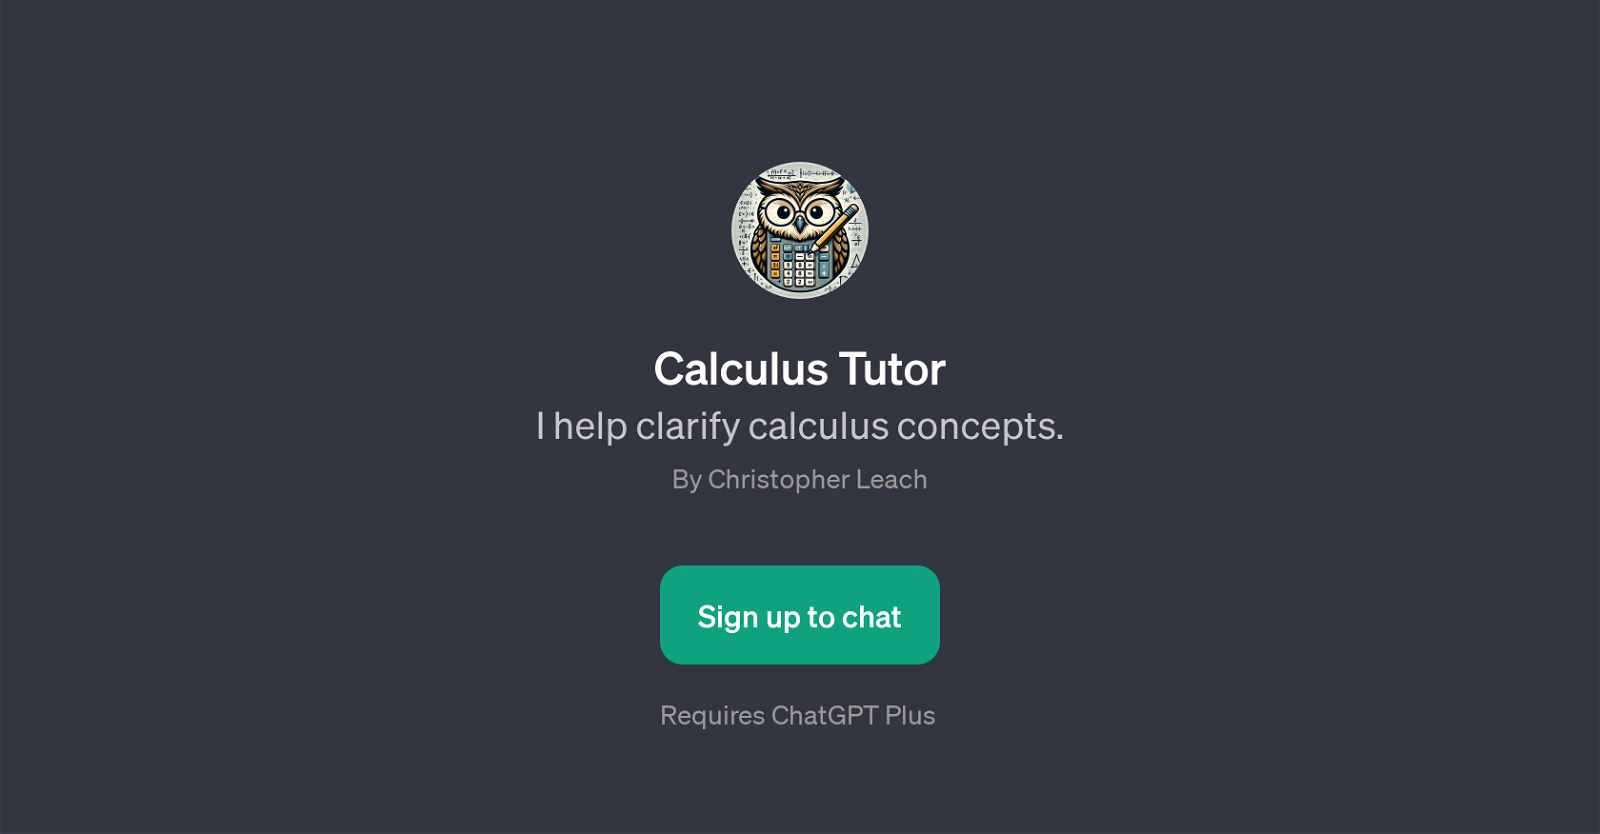 Calculus Tutor website